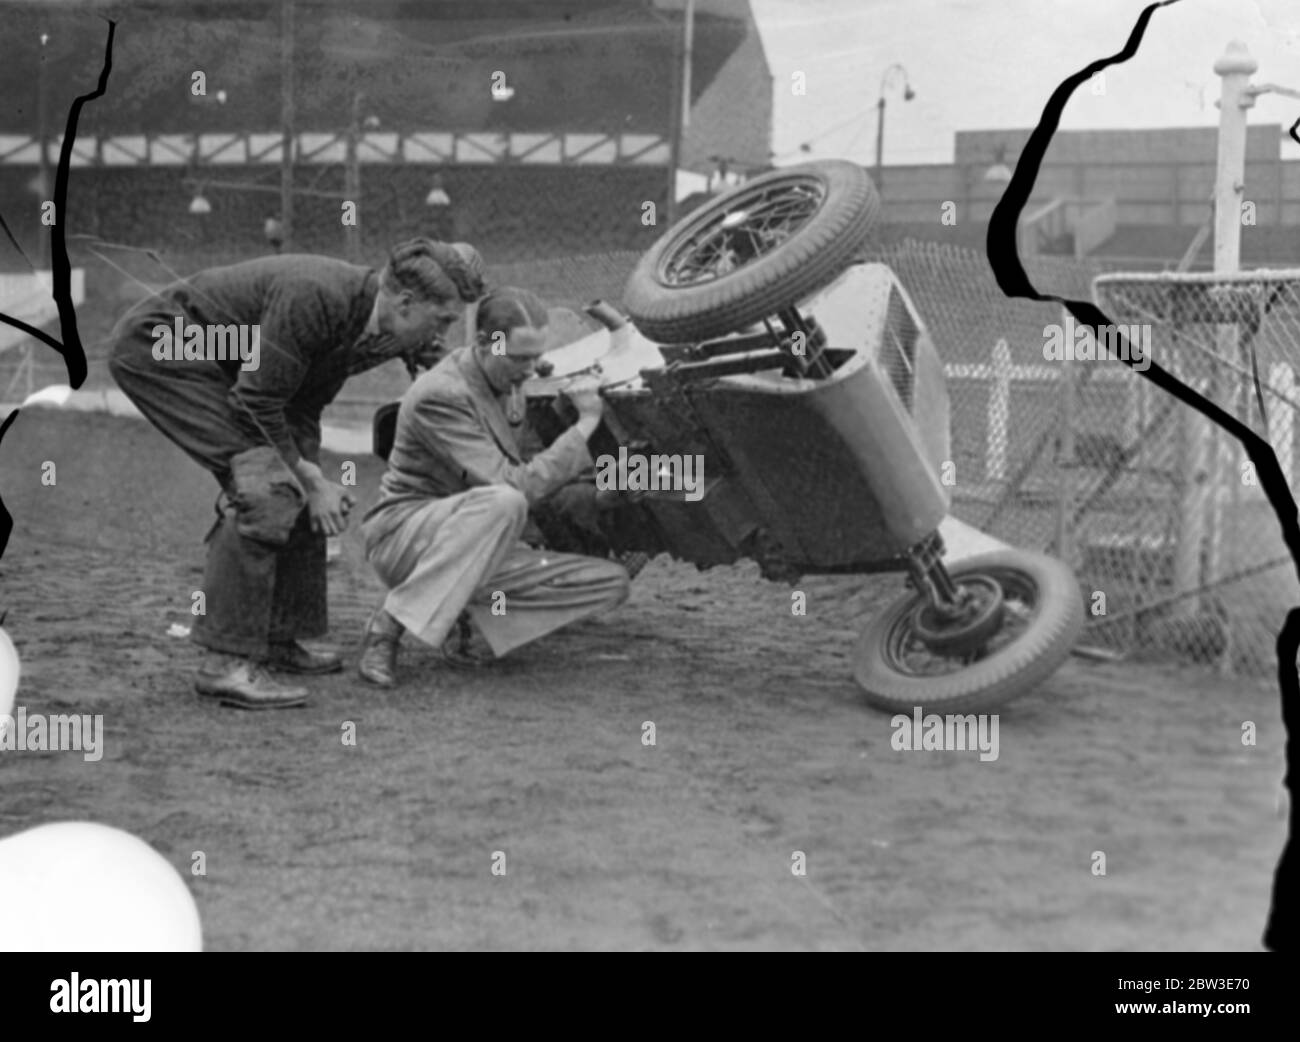 West Ham Speedway zu Midget Autorennen einzuführen. Brooklands Rekordhalter entwirft neues Baby. Foto zeigt Herr G B Bush hob seine Zwergauto mit einer Hand, um eine Anpassung an West Ham von Harold beobachtet machen ( Tiger ) Stevenson . 20 Juni 1935 Stockfoto